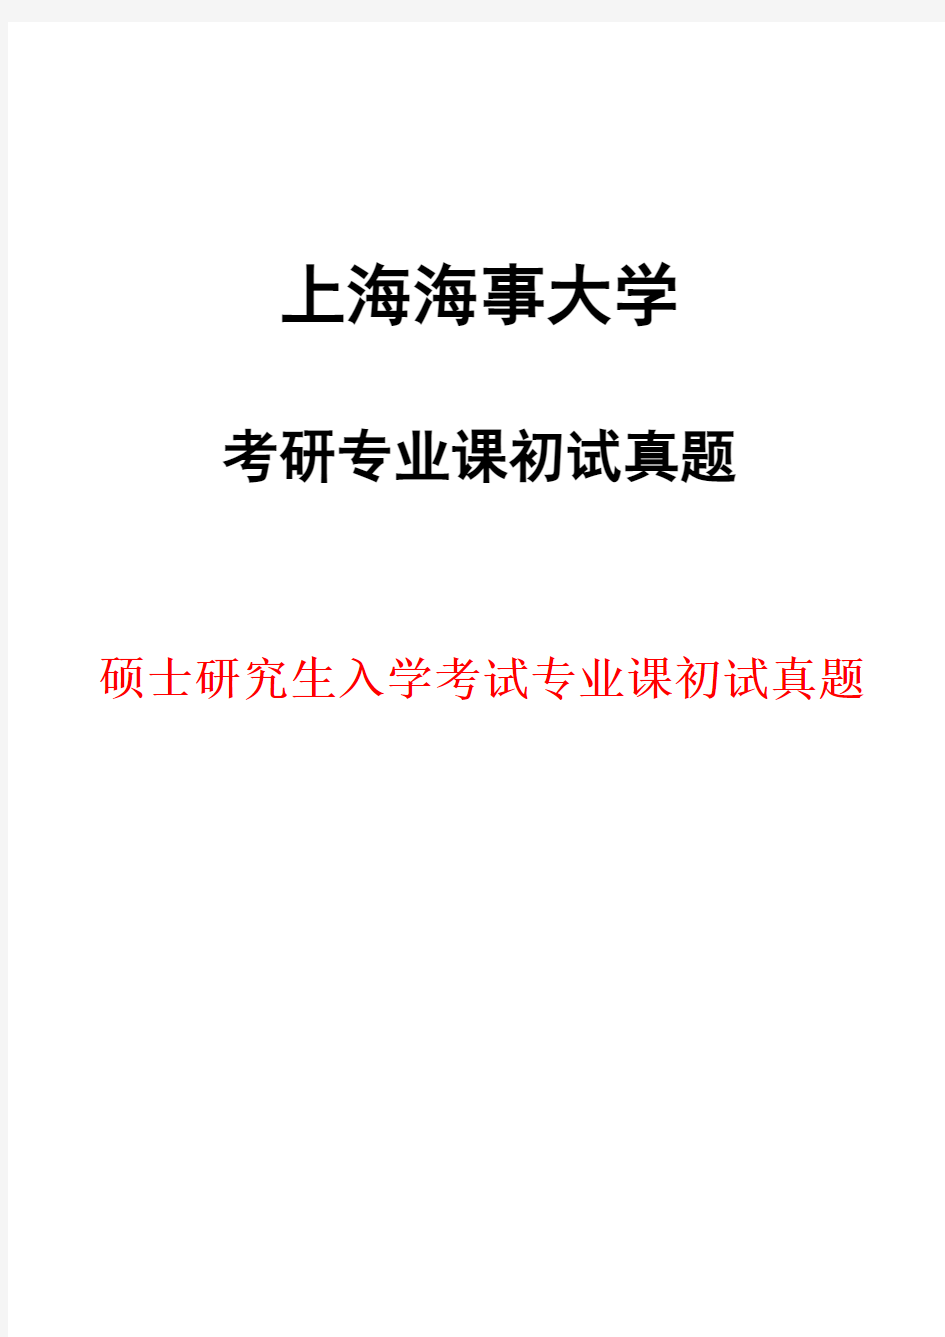 上海海事大学824海事法2018年考研初试真题